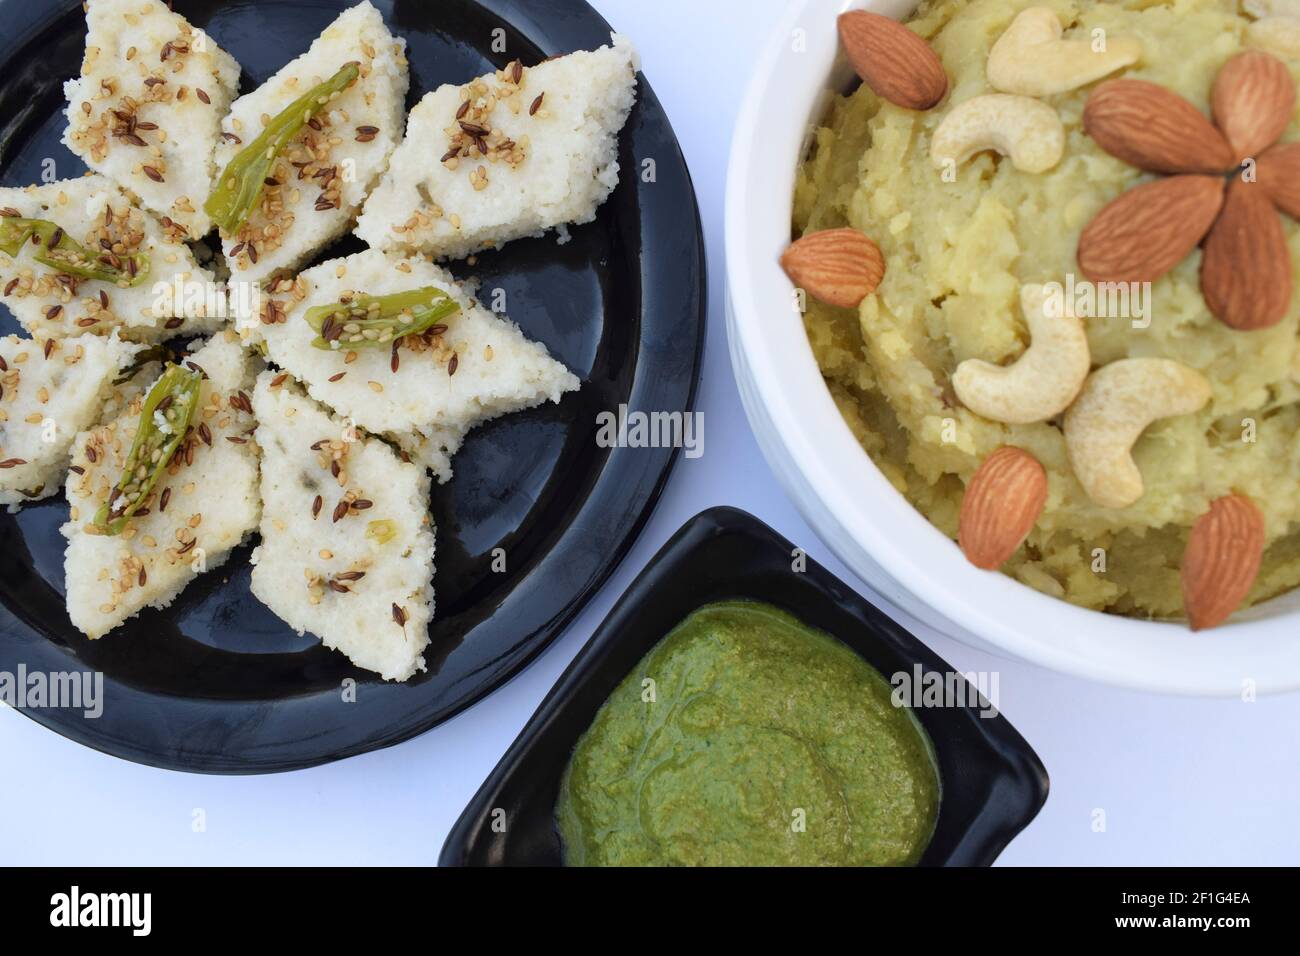 Faradi dhkola, Shakarkandi halwa, green mint coriander chutney eaten during hindi fasting days like ekdasi, mahashivratri, vrat, pooja, religious beli Stock Photo